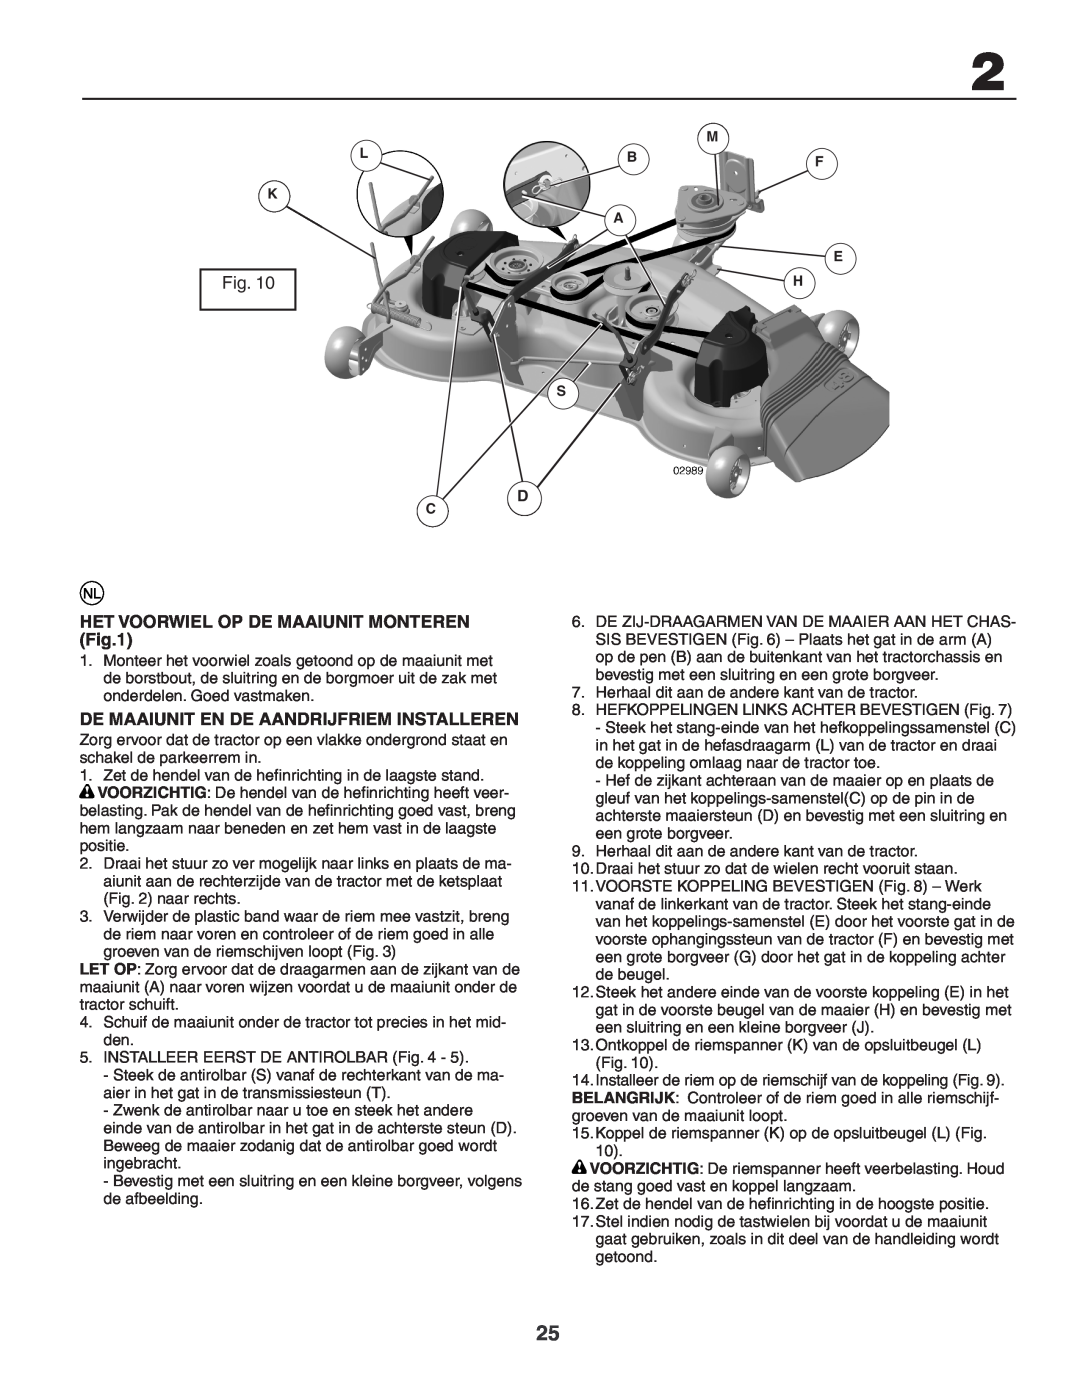 Husqvarna GTH260XP instruction manual Het Voorwiel Op De Maaiunit Monteren, De Maaiunit En De Aandrijfriem Installeren 